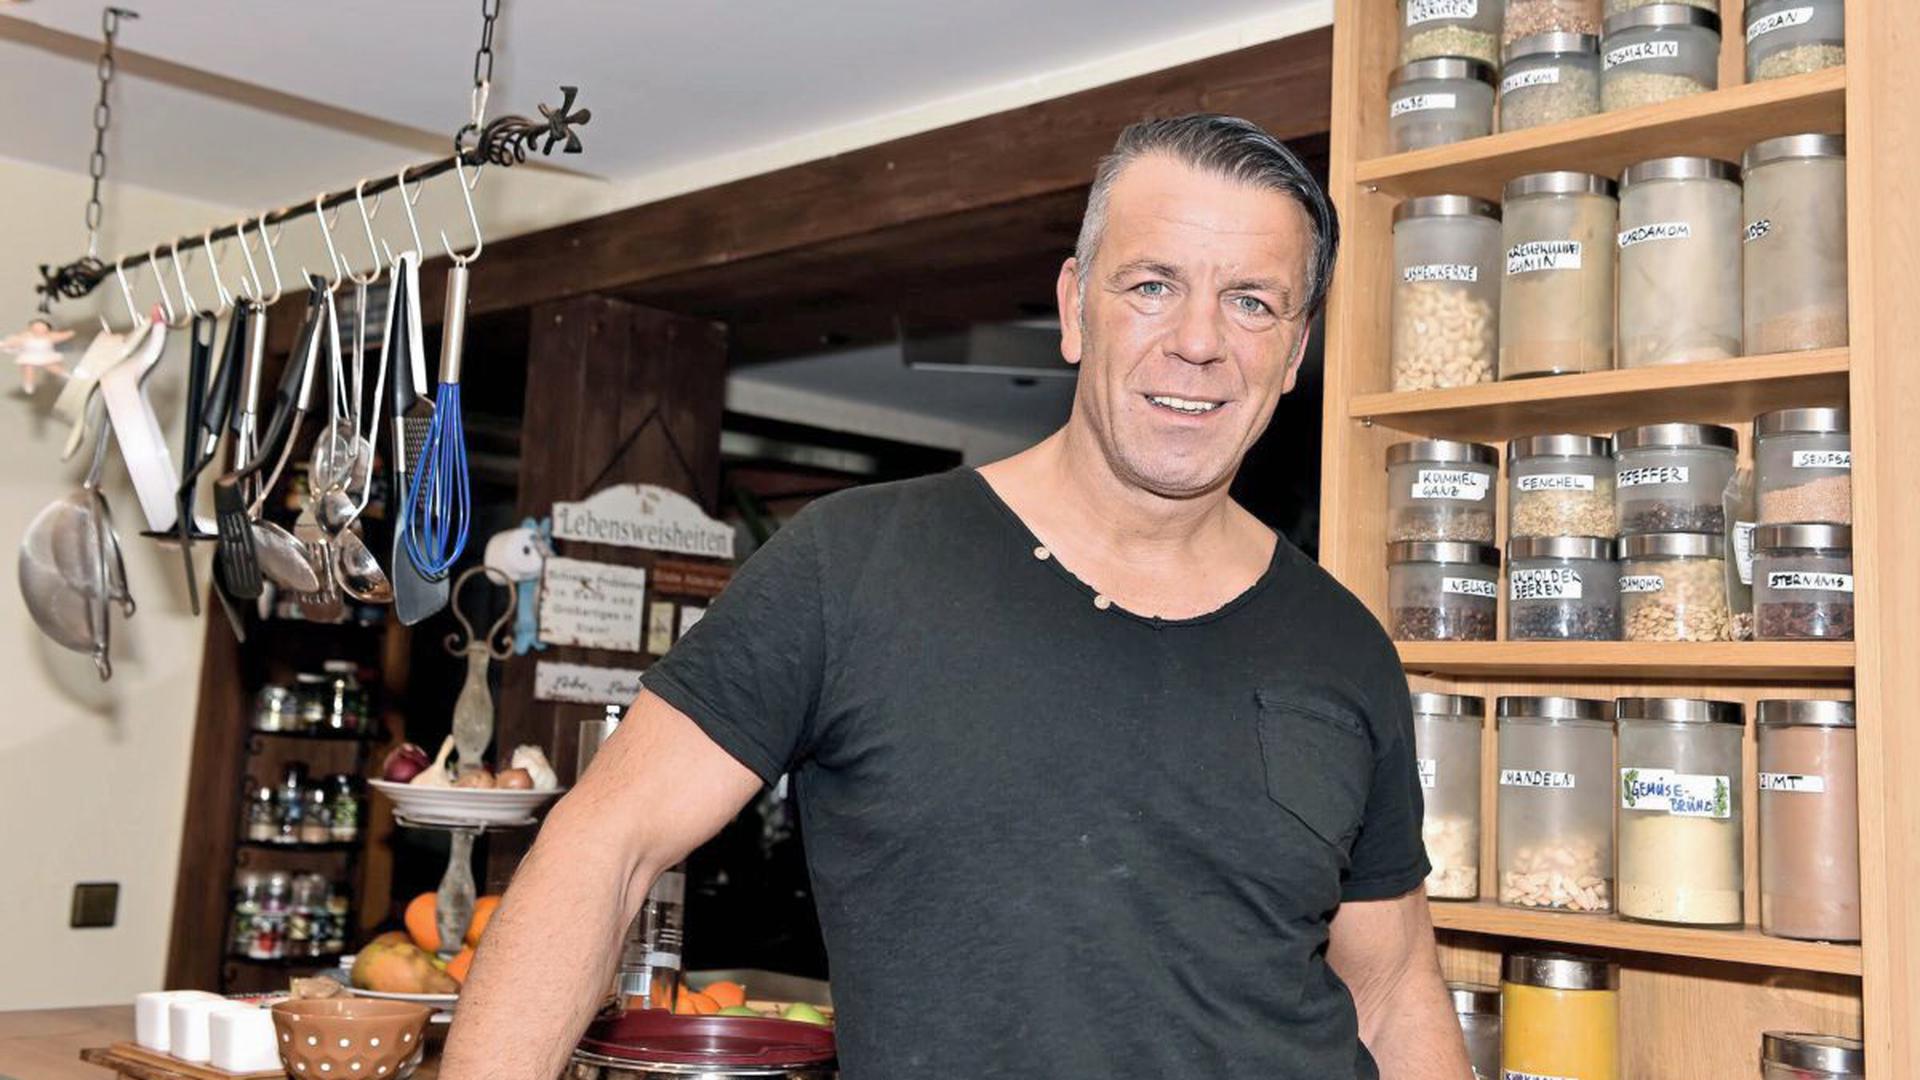 Detlef John, der dem Rammstein-Sänger Till Lindemann ähnlich sieht, in seiner Küche.